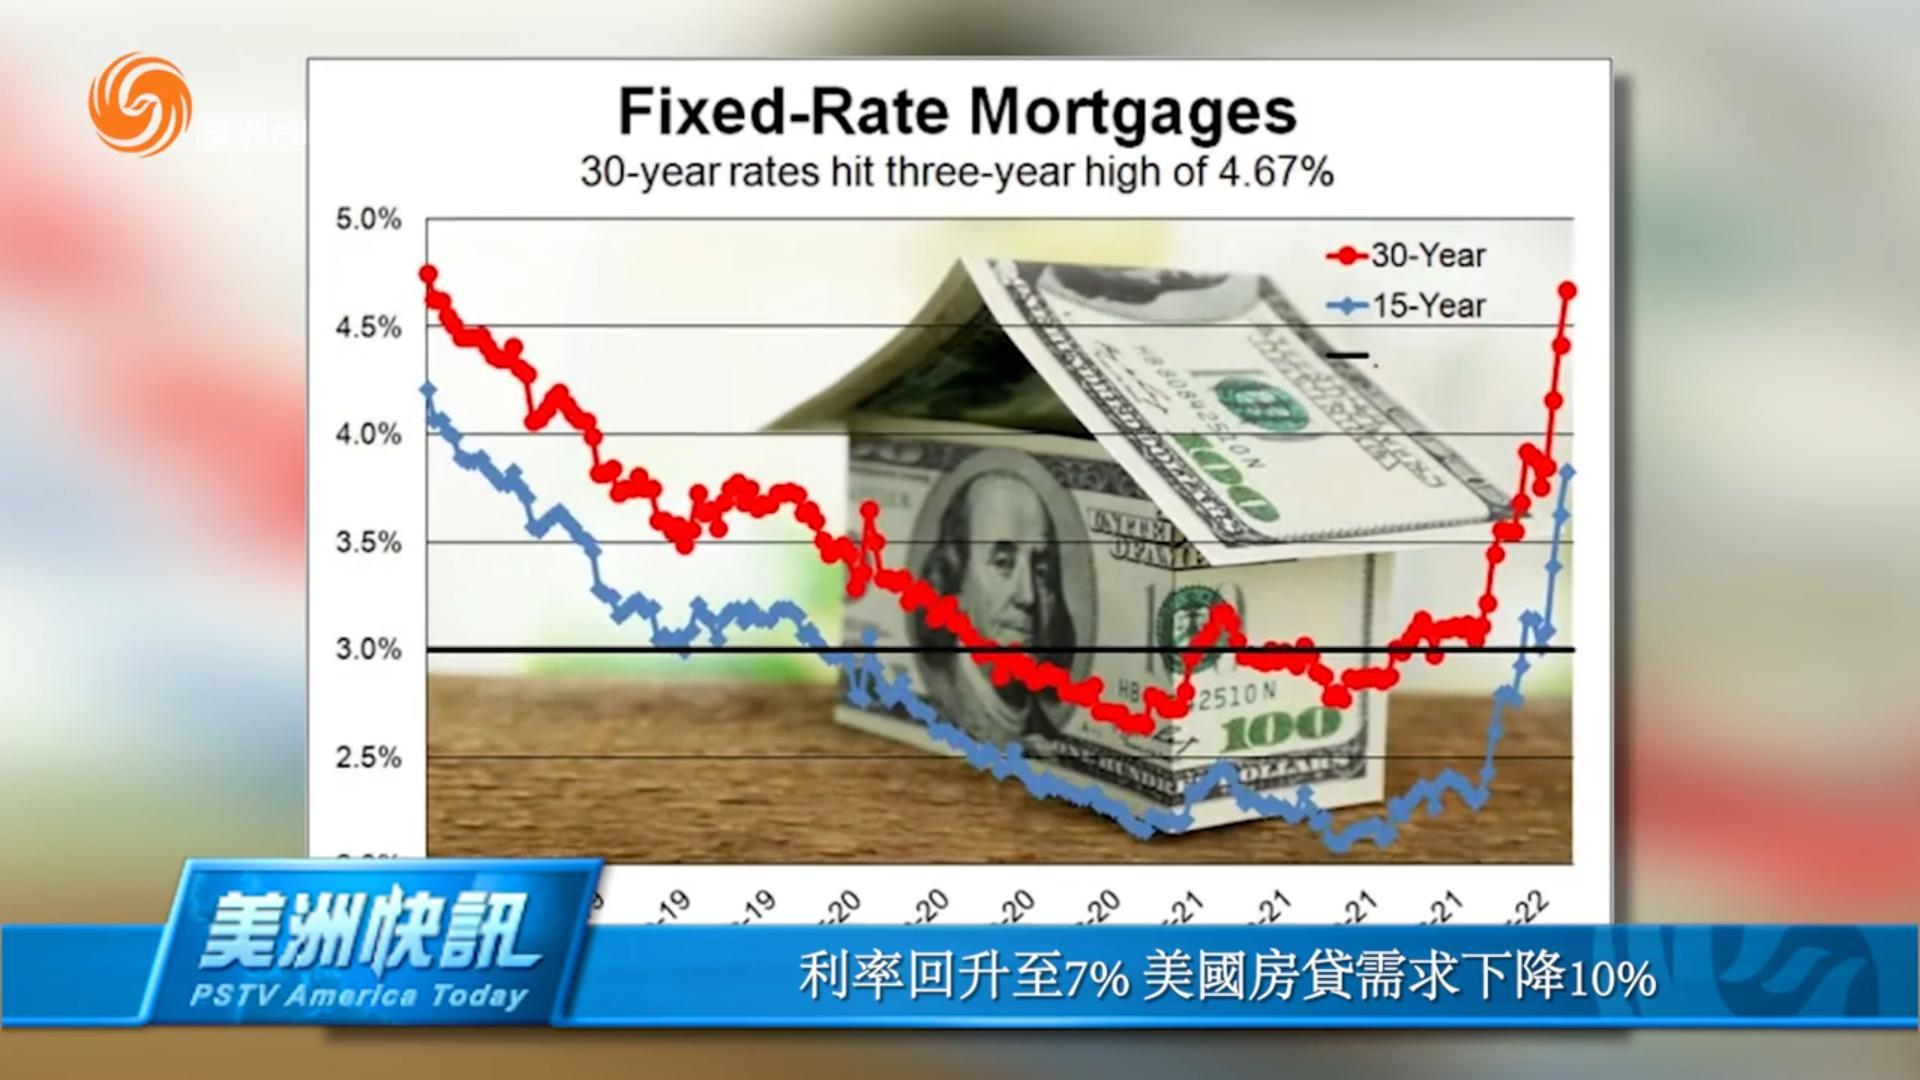 利率回升至7% 美國房貸需求下降10%